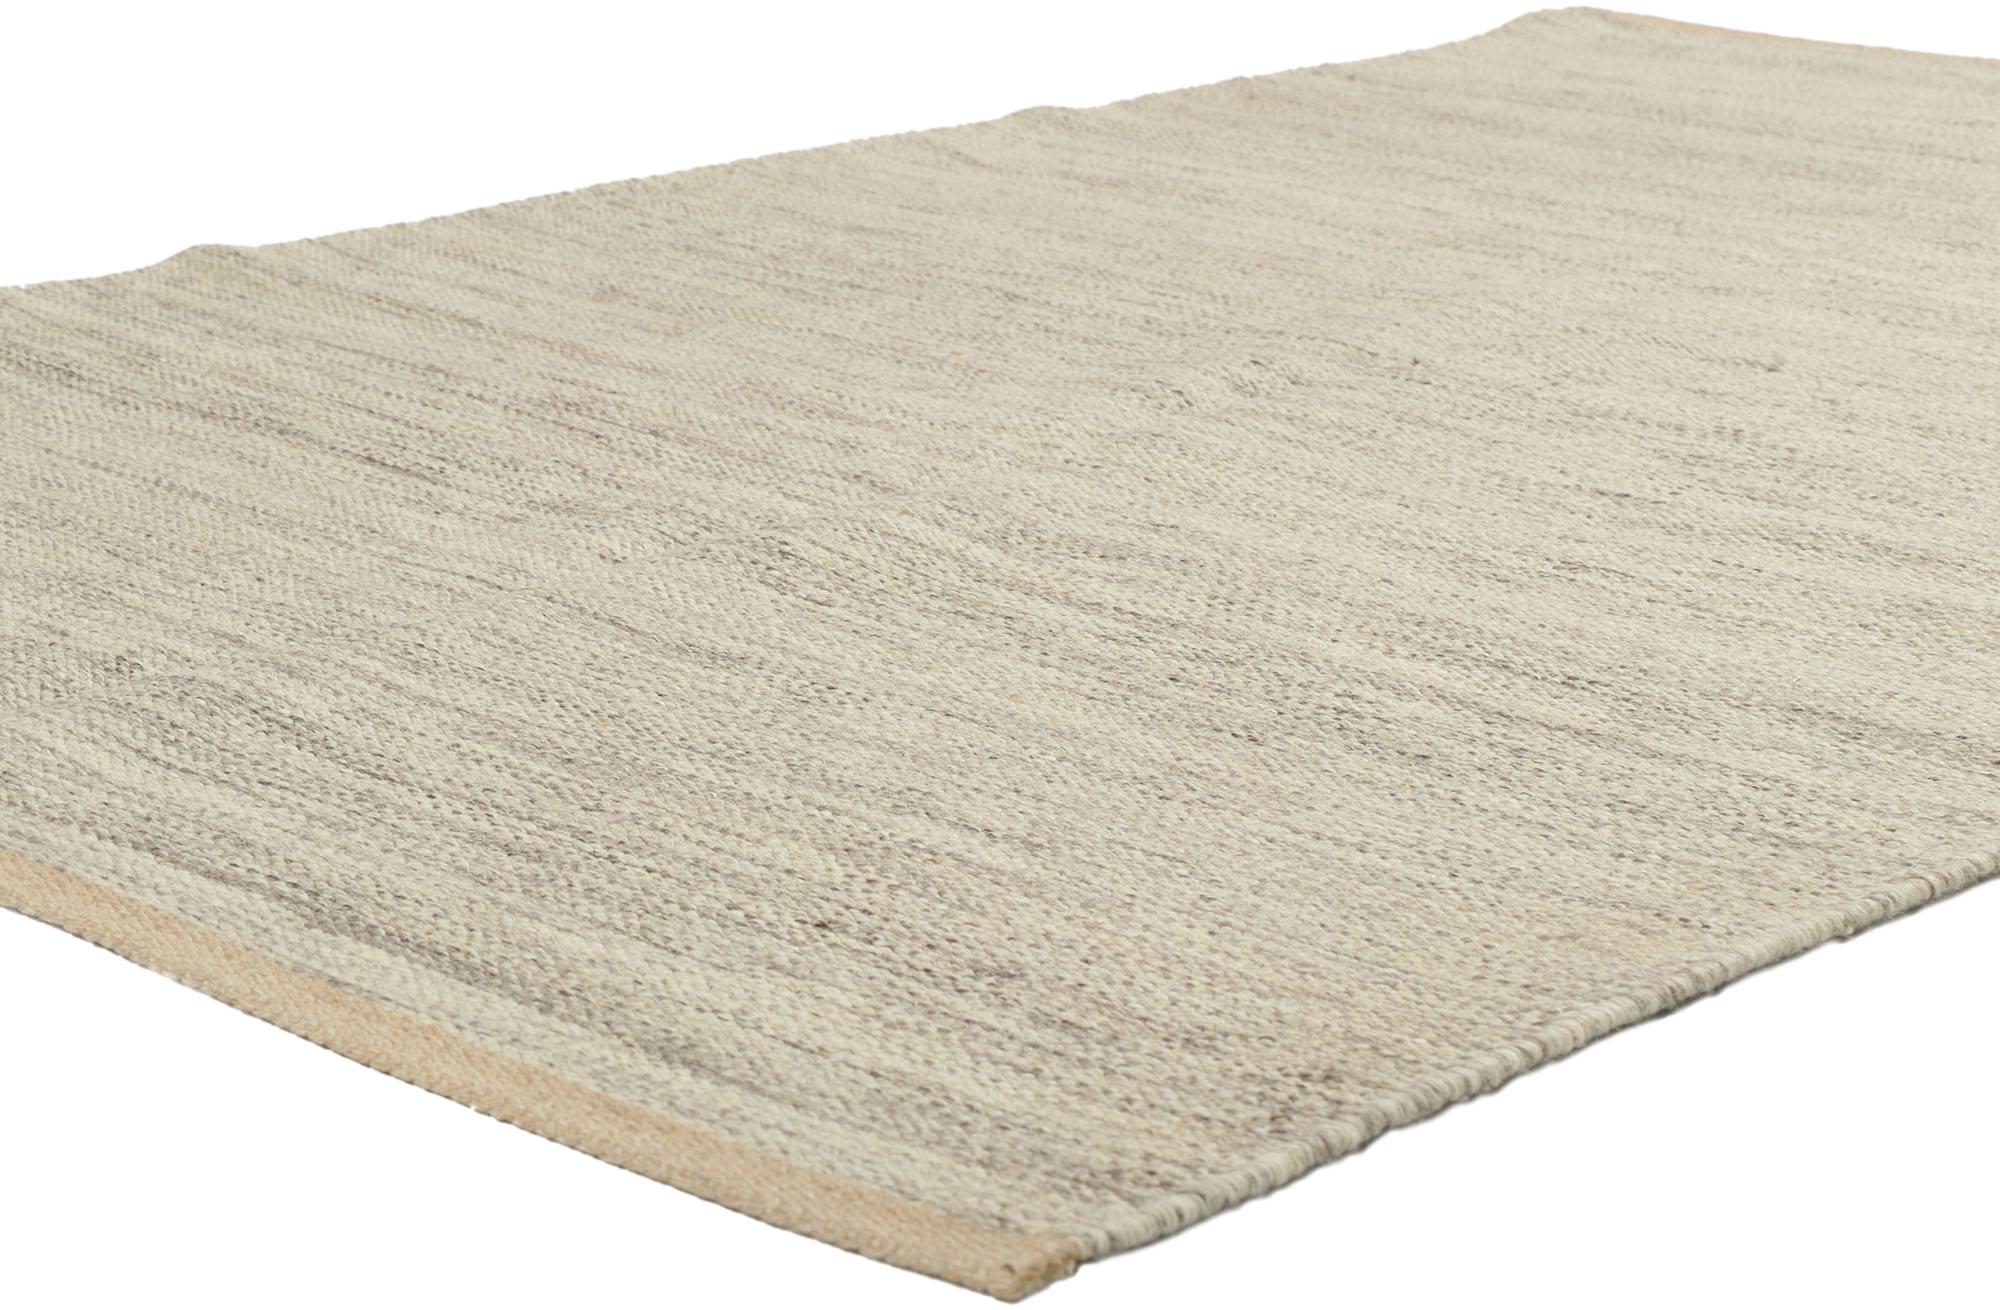 30698 Neuer schwedisch inspirierter Kilim-Teppich mit minimalistischem, skandinavisch modernem Stil 05'02 x 08'00. Dieser handgewebte, schwedisch inspirierte Kilim-Teppich aus Wolle ist warm und einladend und verkörpert auf wunderbare Weise die